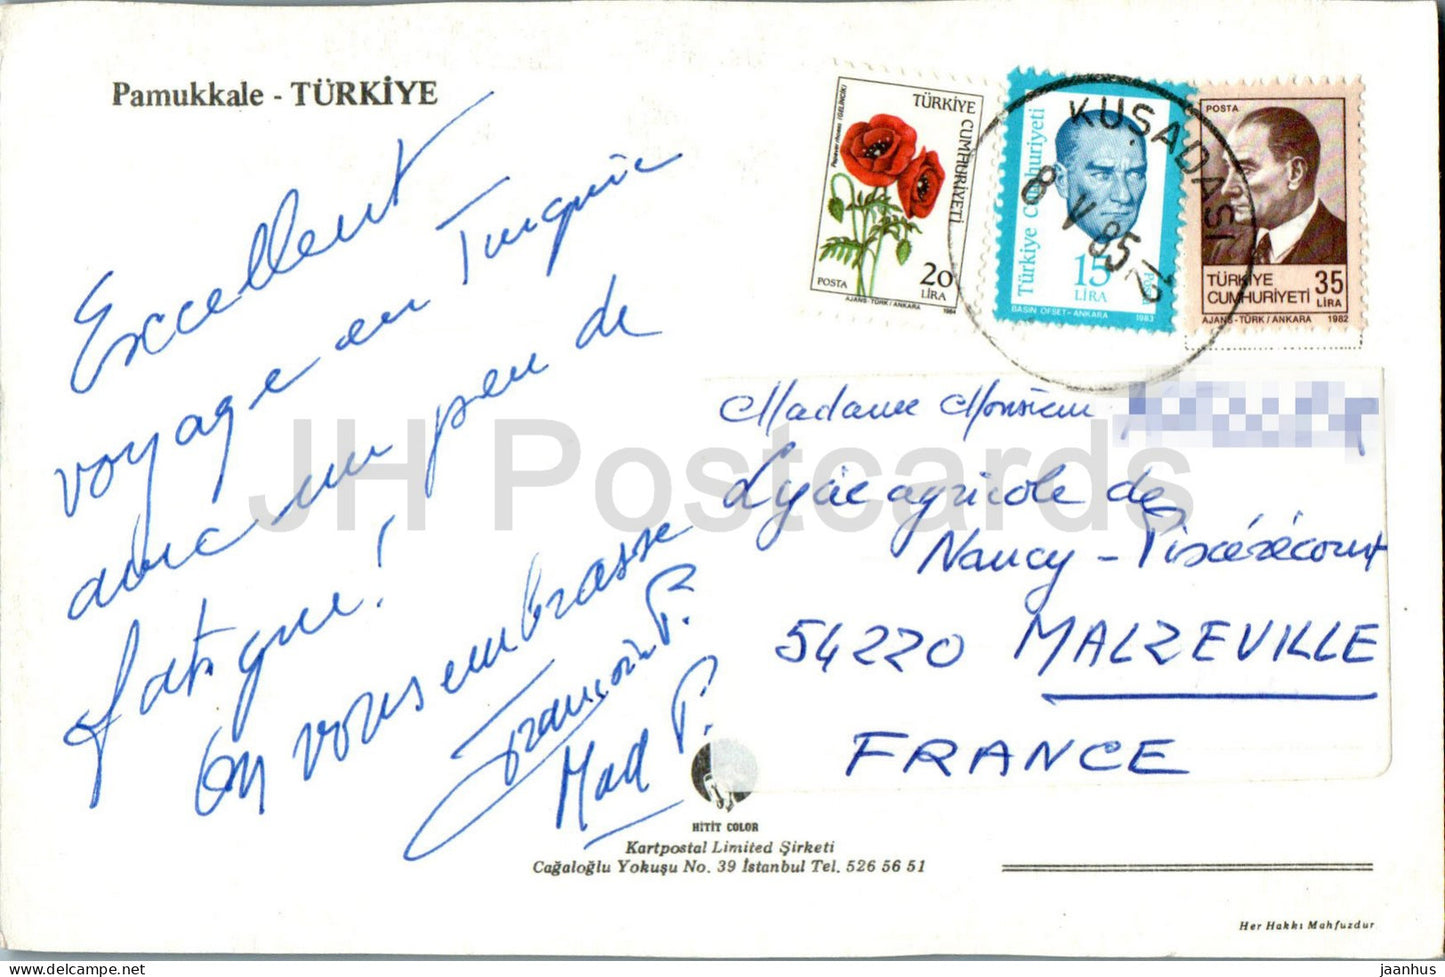 Salzbäder von Pamukkale – 1985 – Türkei – gebraucht 